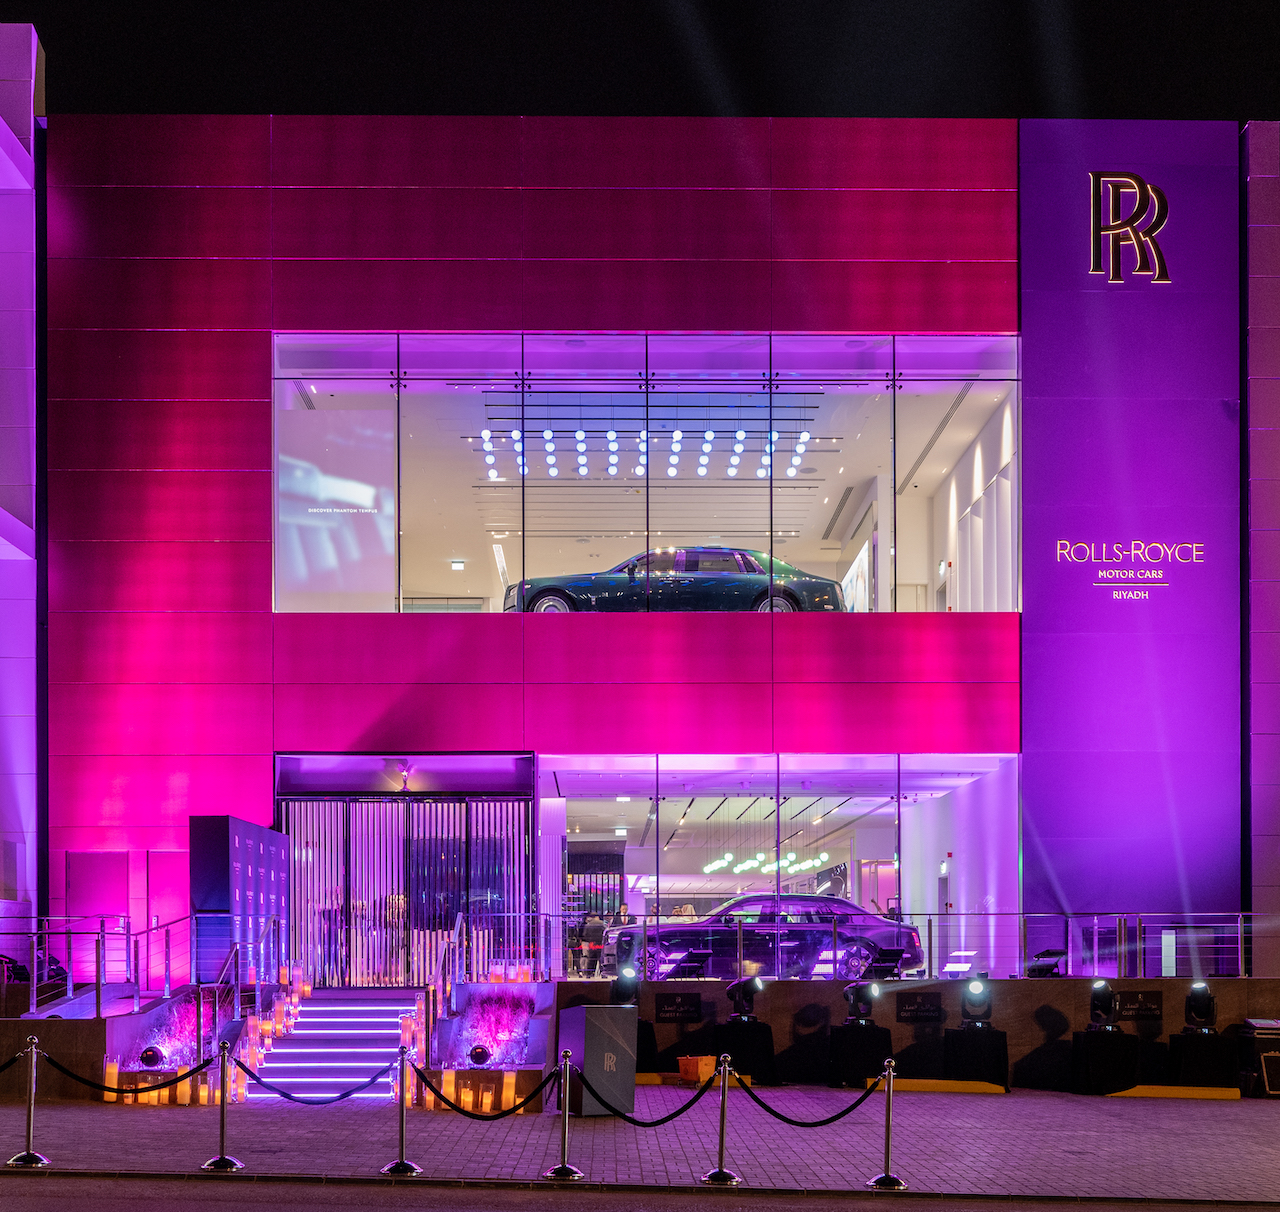 رولز-رويس موتور كارز تفتتح صالة عرض جديدة في الرياض